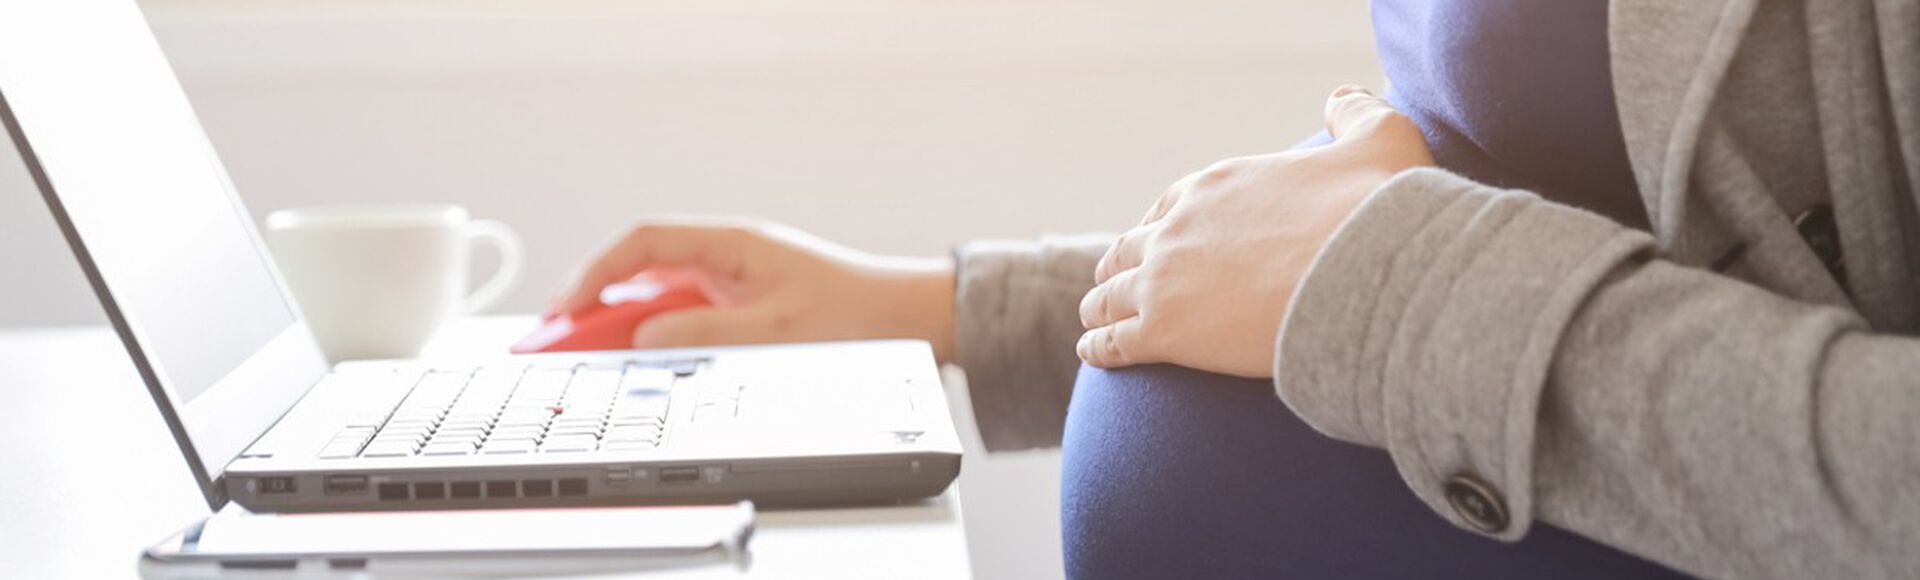 Mulher grávida sentada em mesa de trabalho digitando em computador